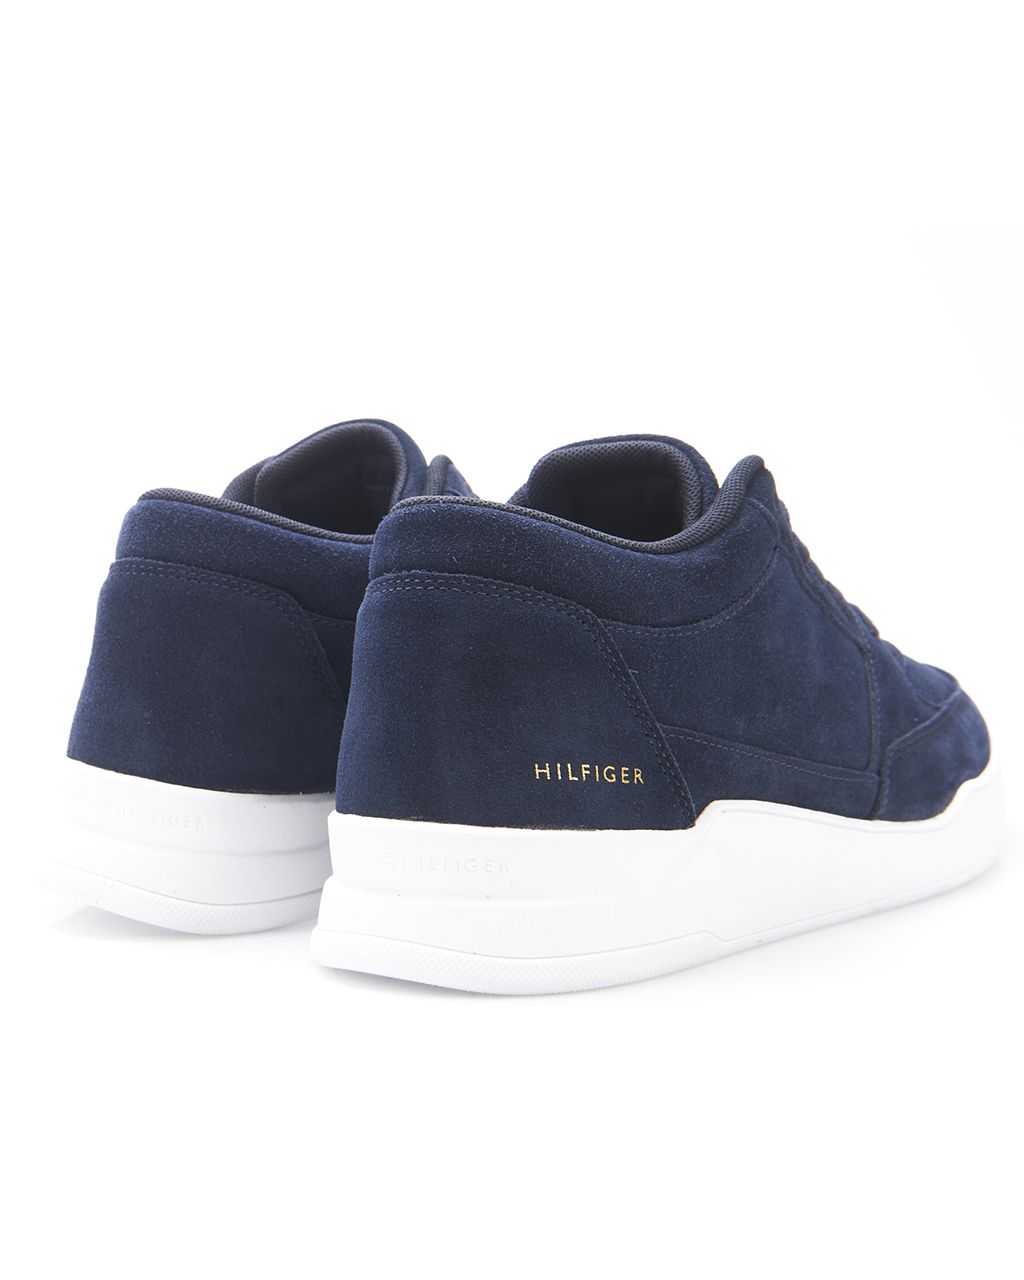 Tommy Hilfiger Menswear Casual schoenen Donker blauw 081206-001-41